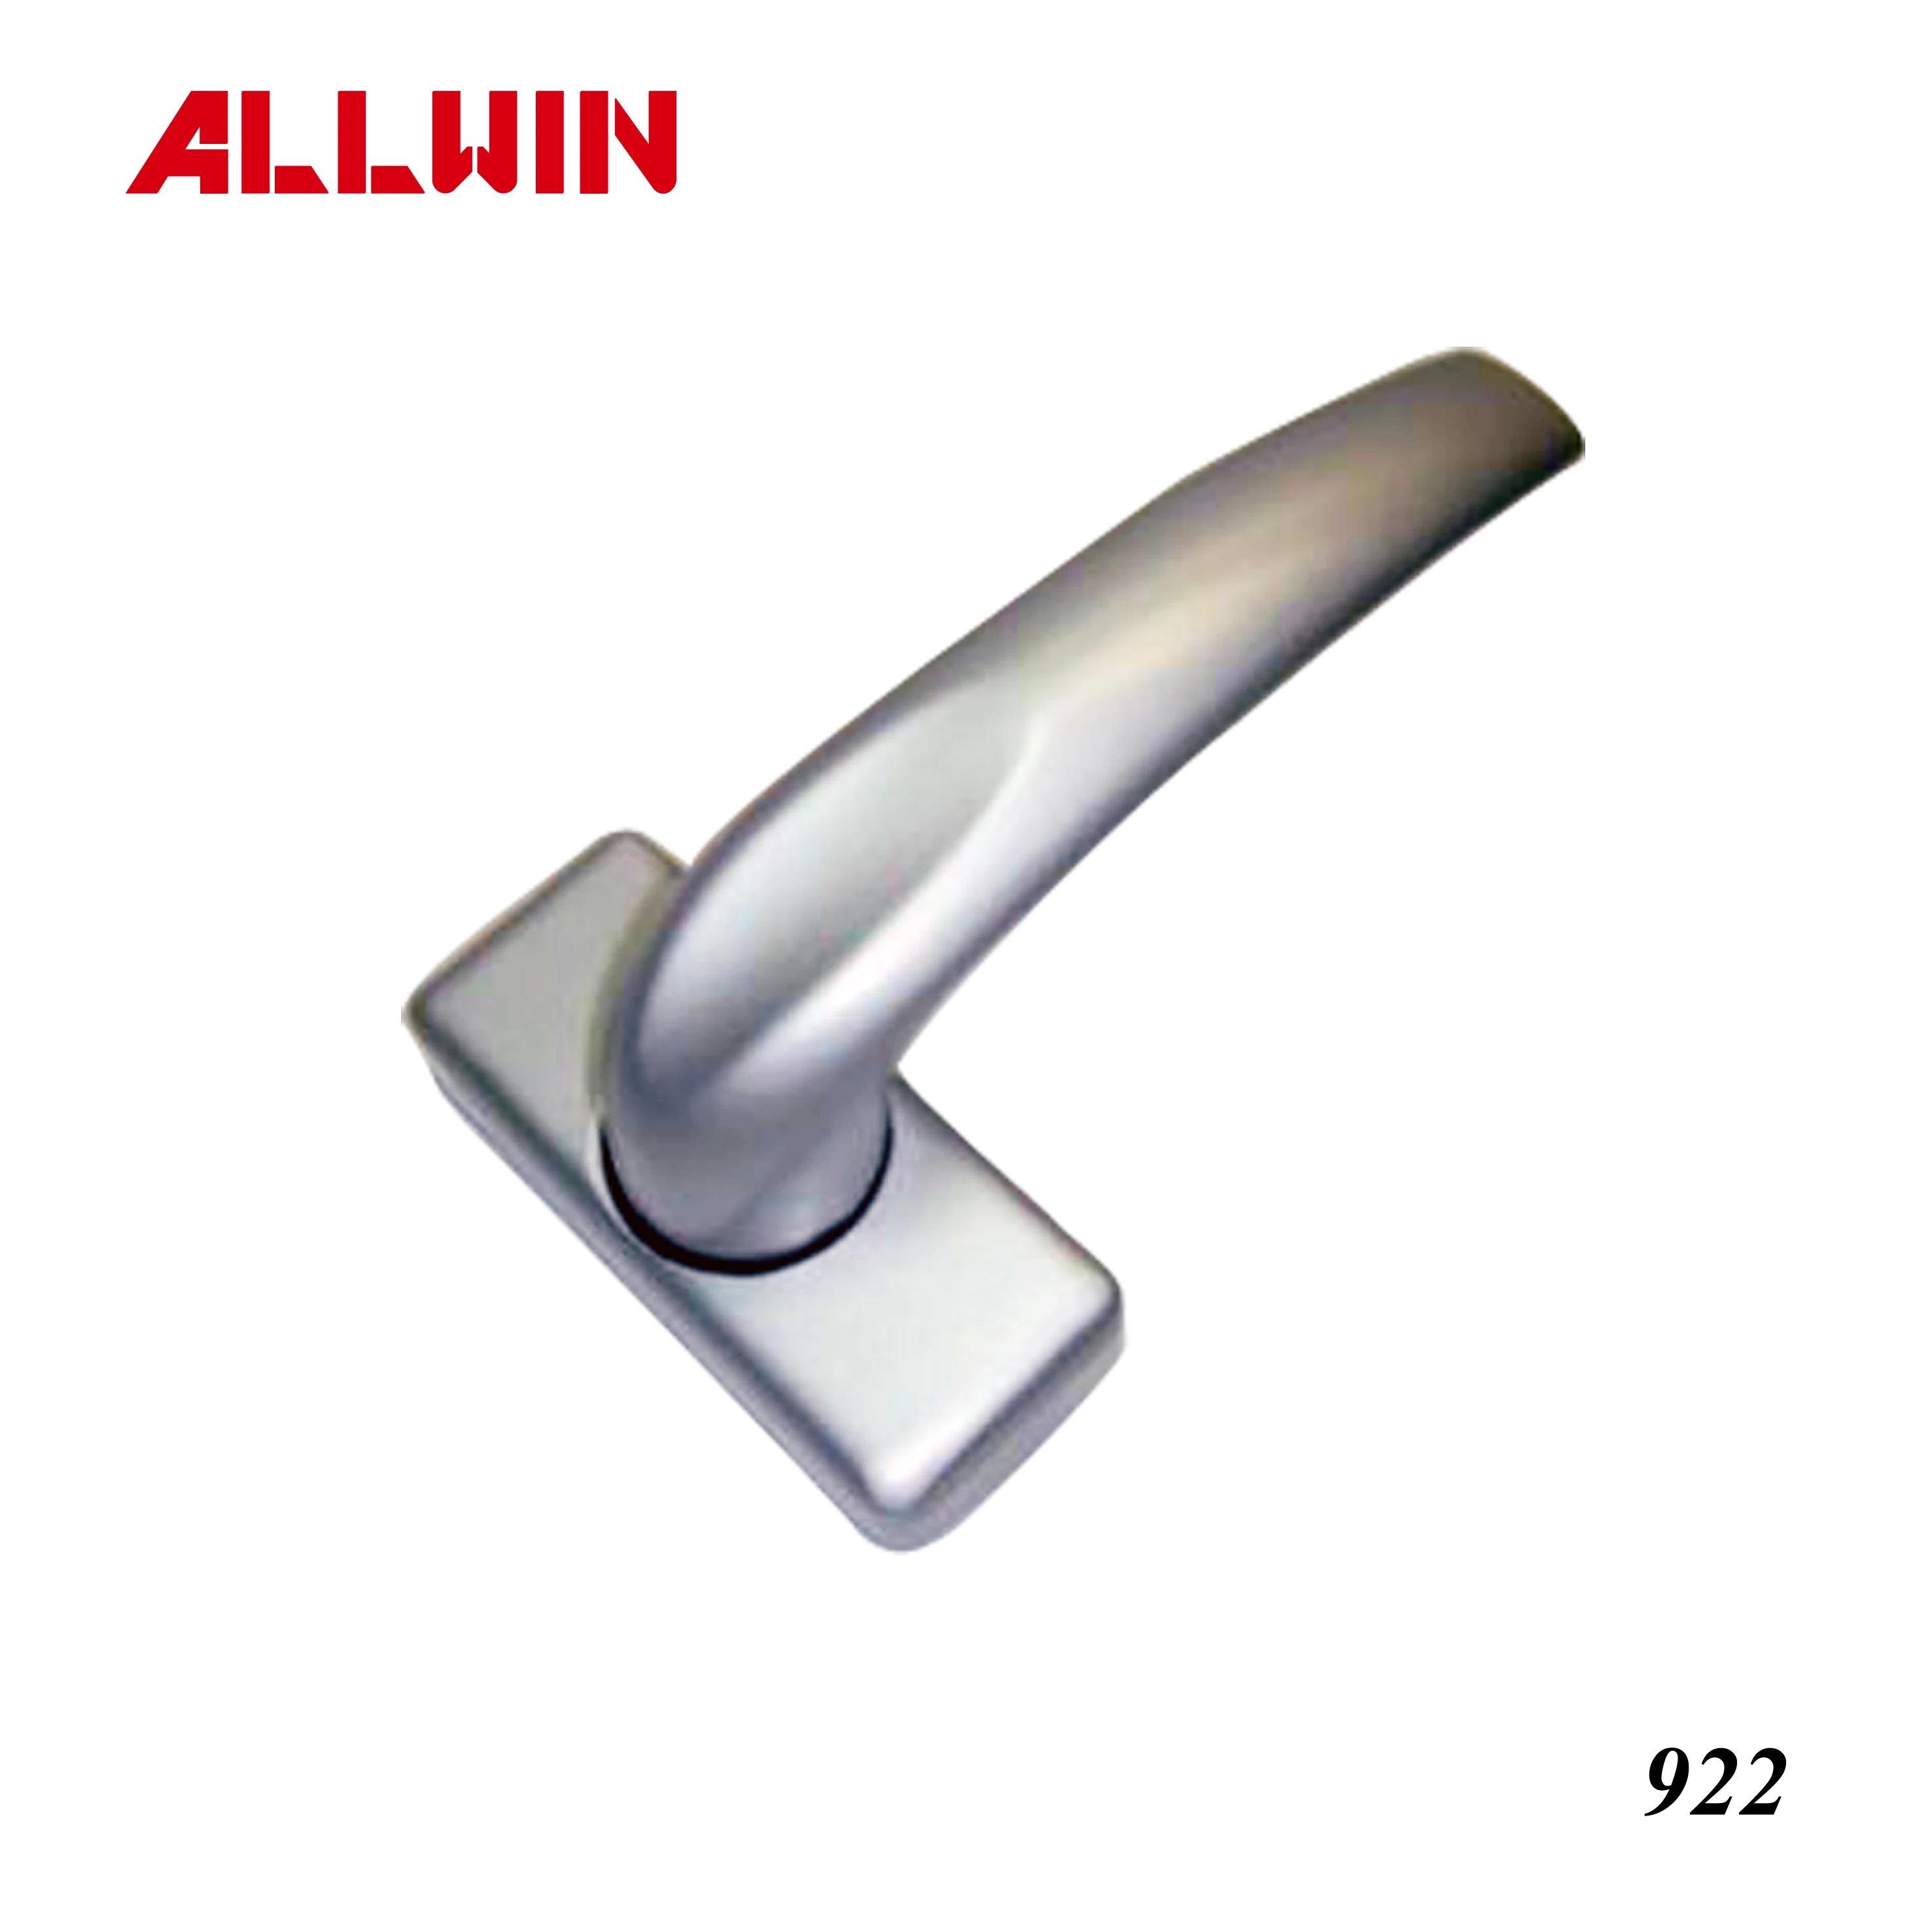 Casting Aluminum Window Latch Pull Handle